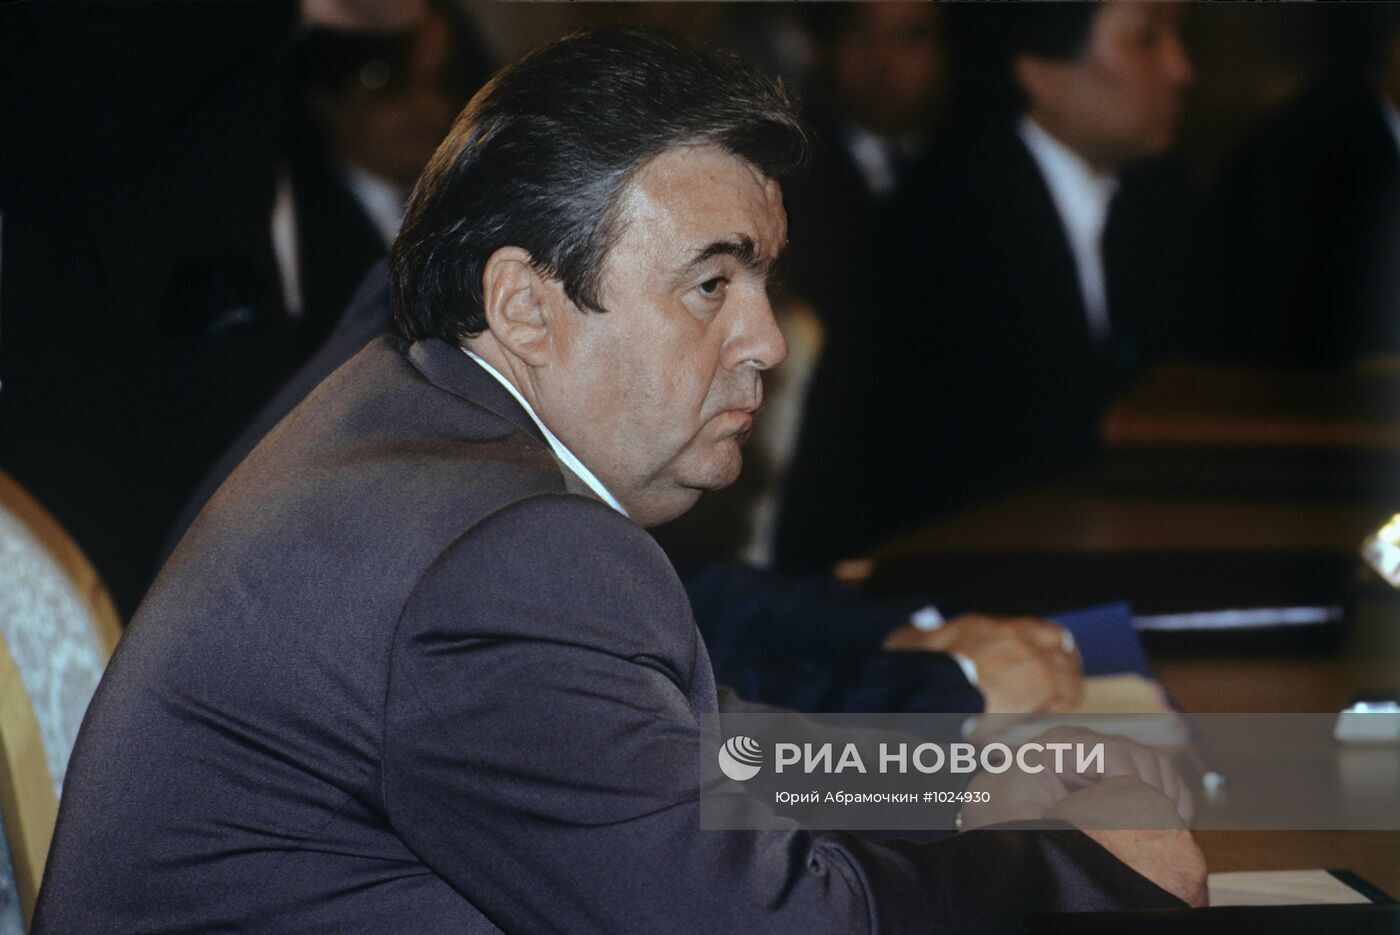 وفاة أول رئيس لجمهورية مولدوفا